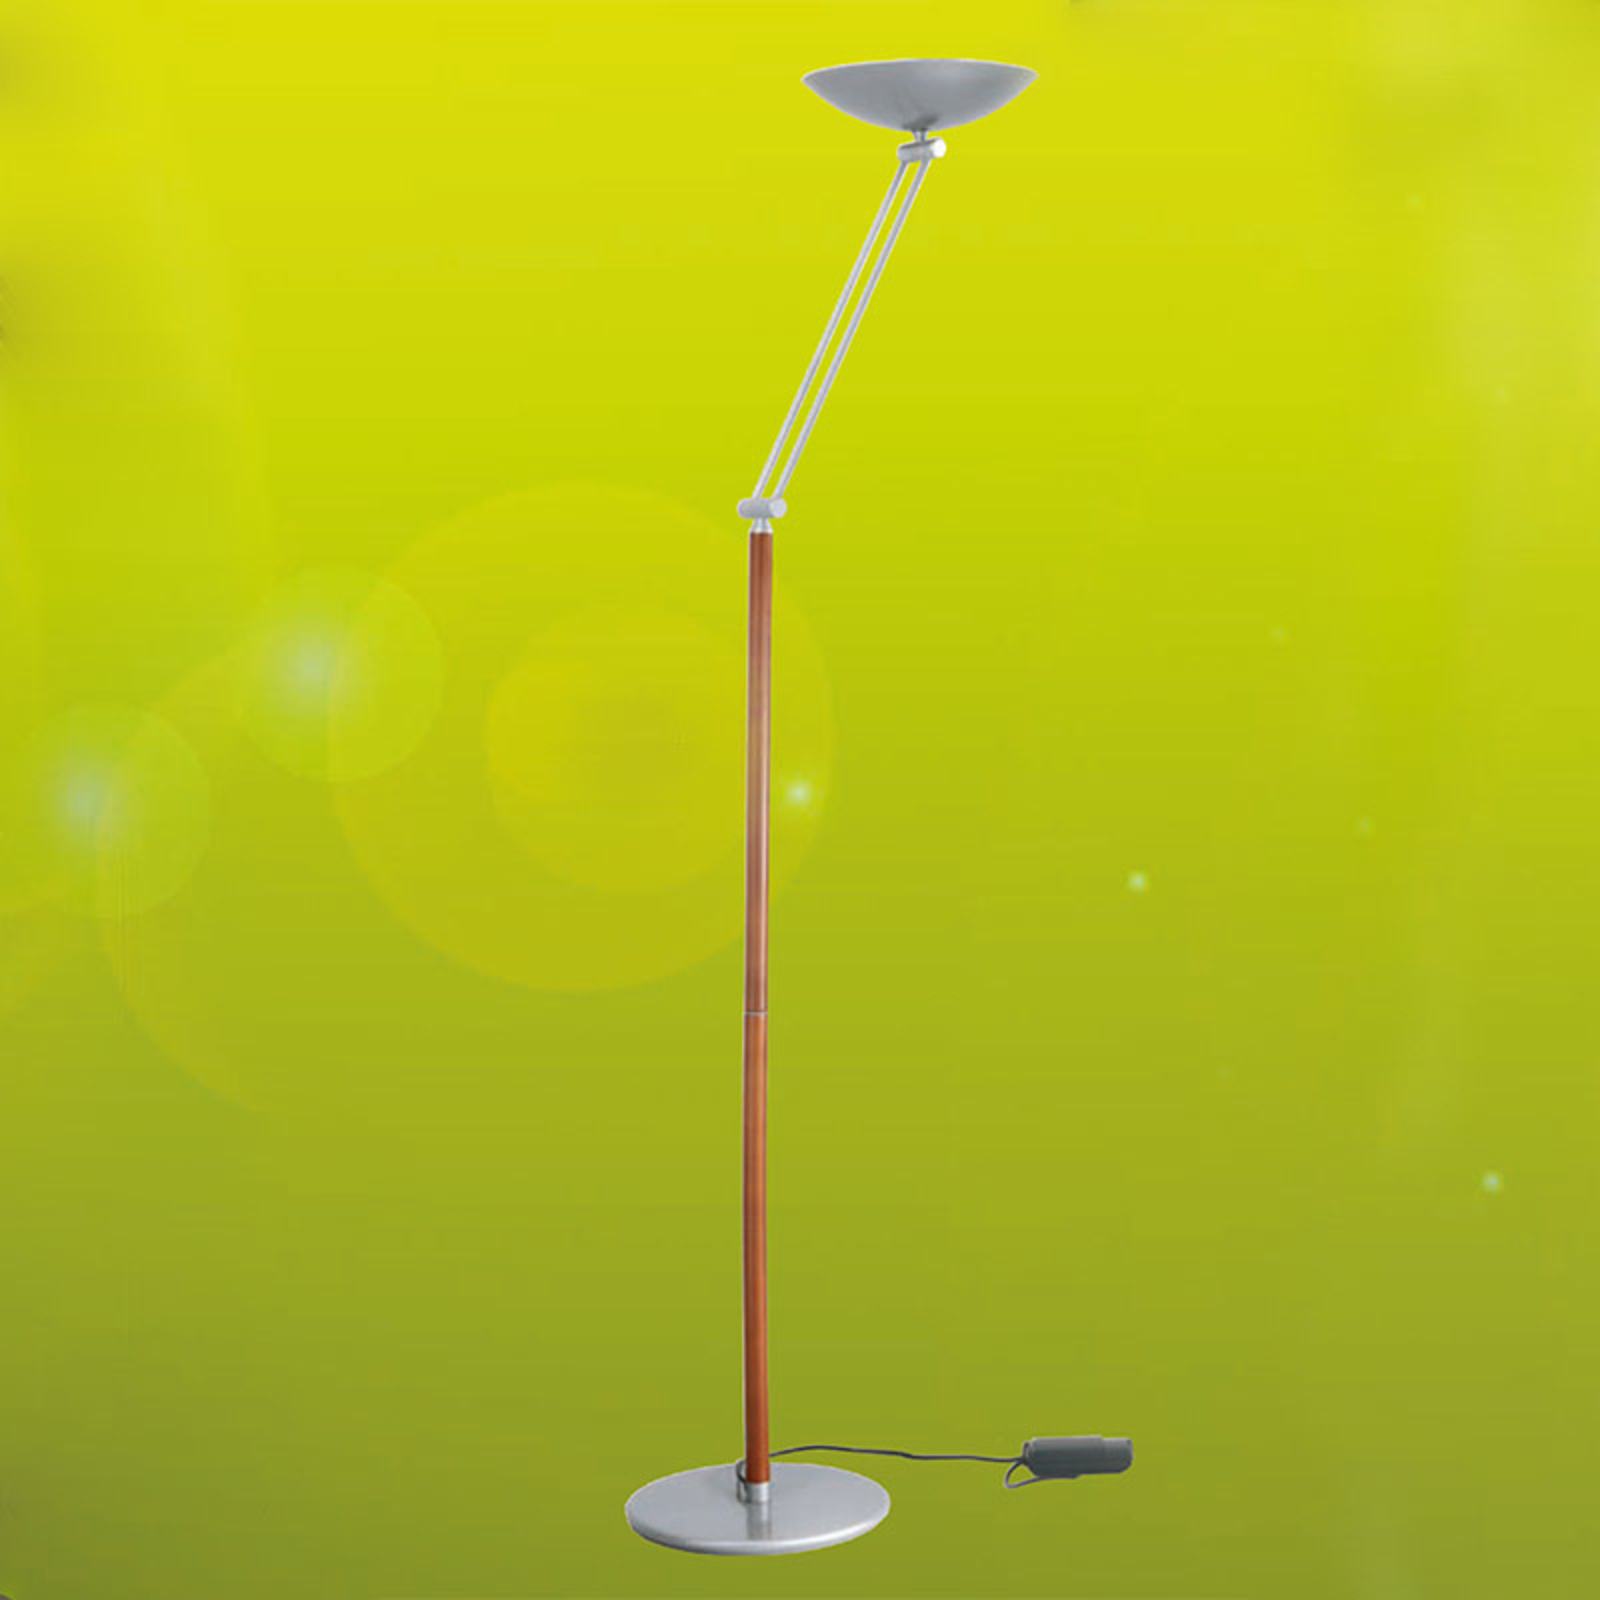 Lib V LED uplighter floor lamp, height-adjustable, silver